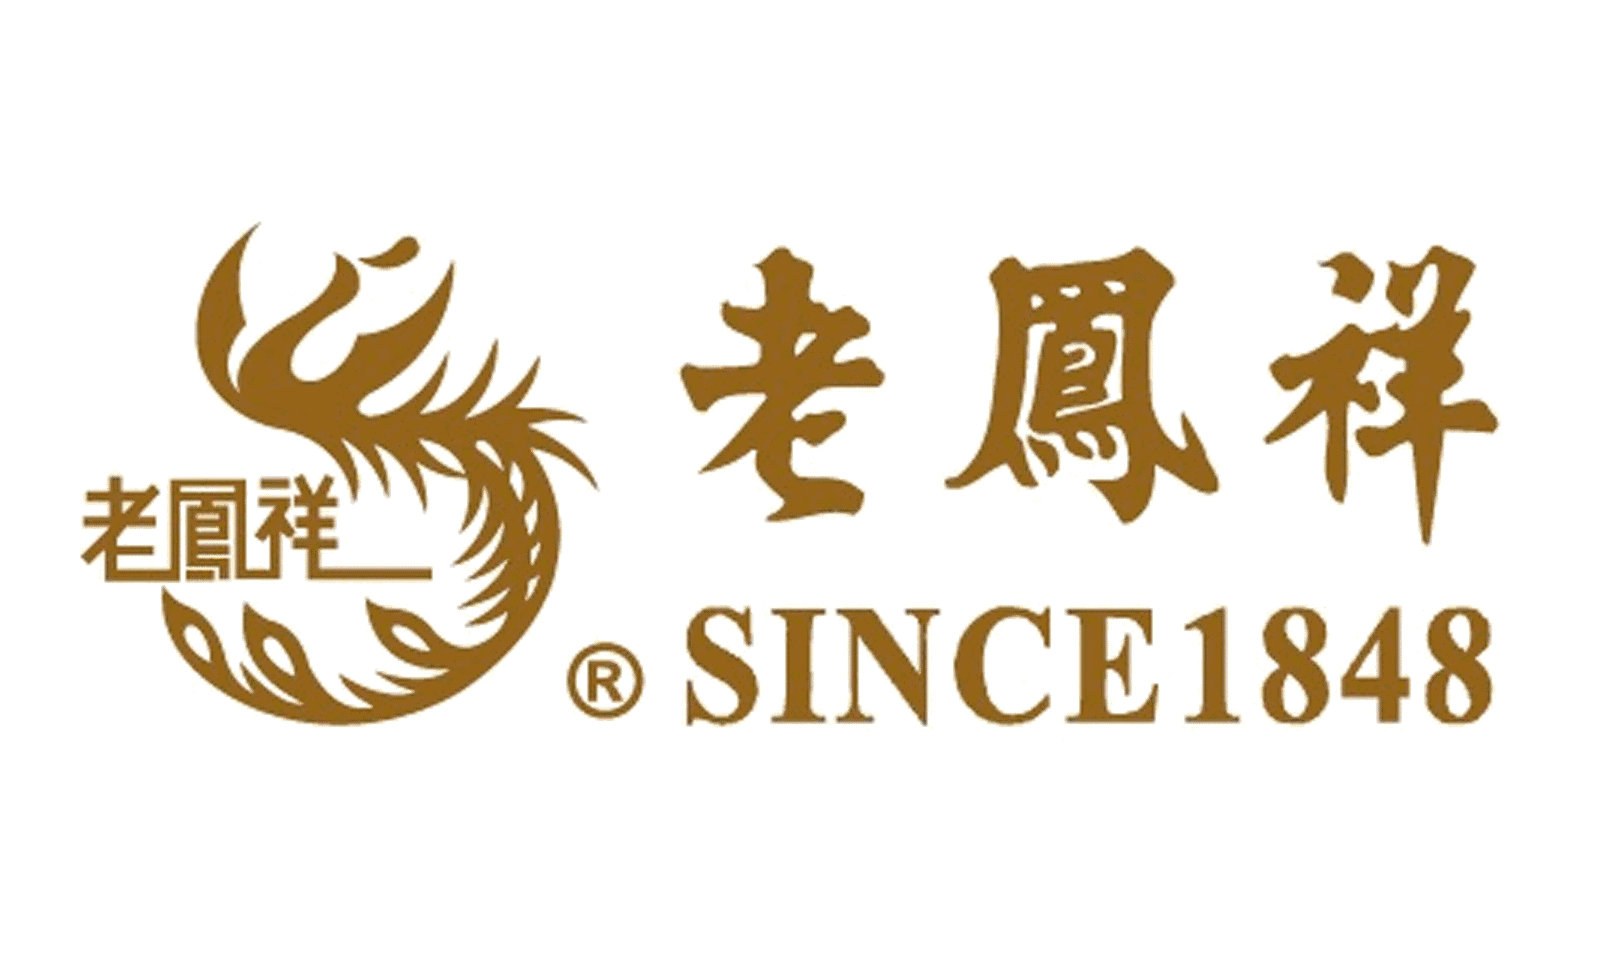 老凤祥logo字体图片